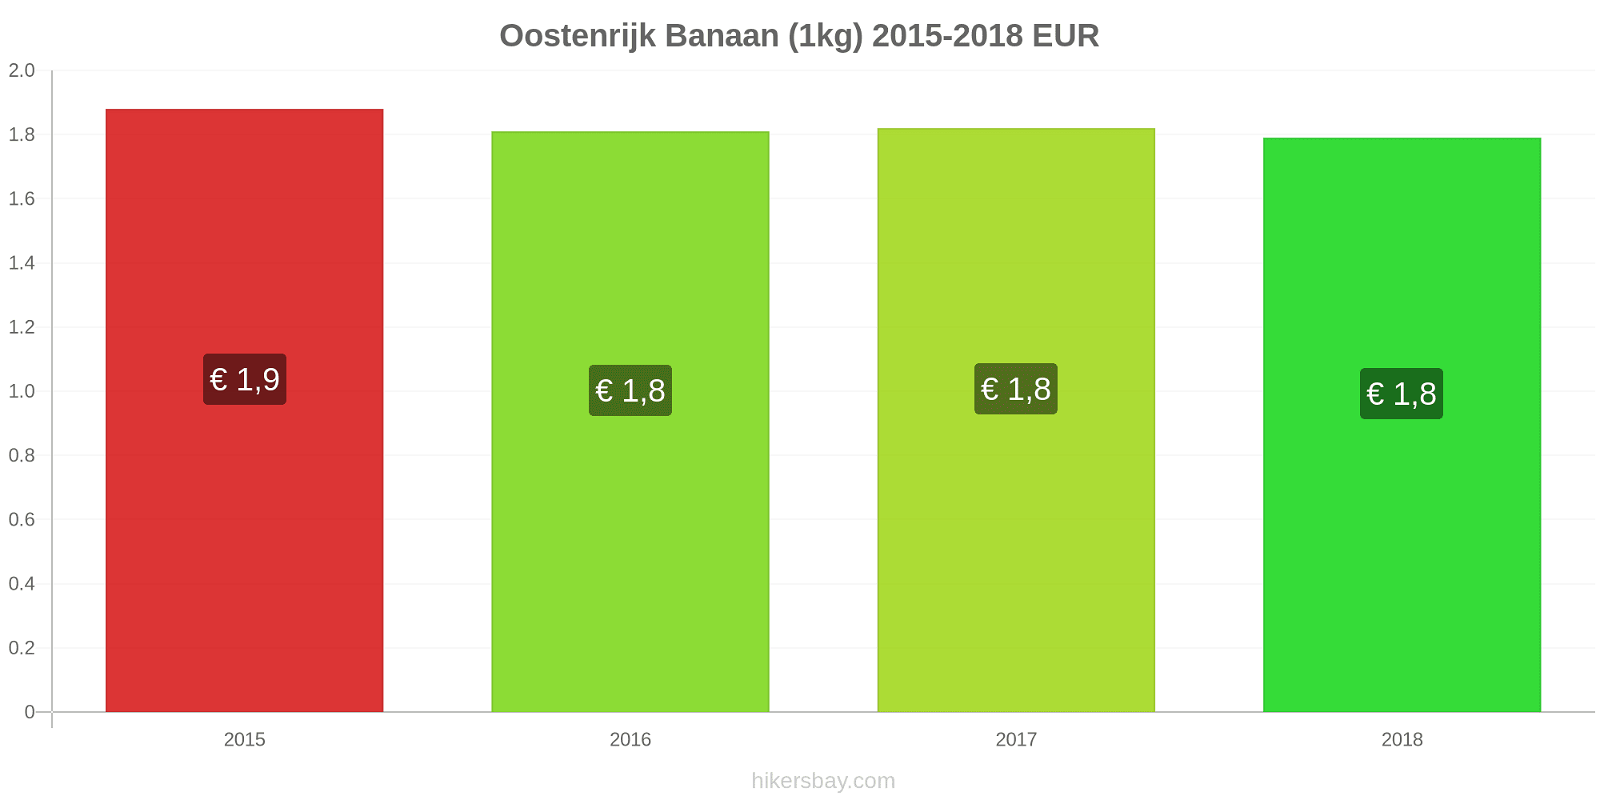 Oostenrijk prijswijzigingen Bananen (1kg) hikersbay.com